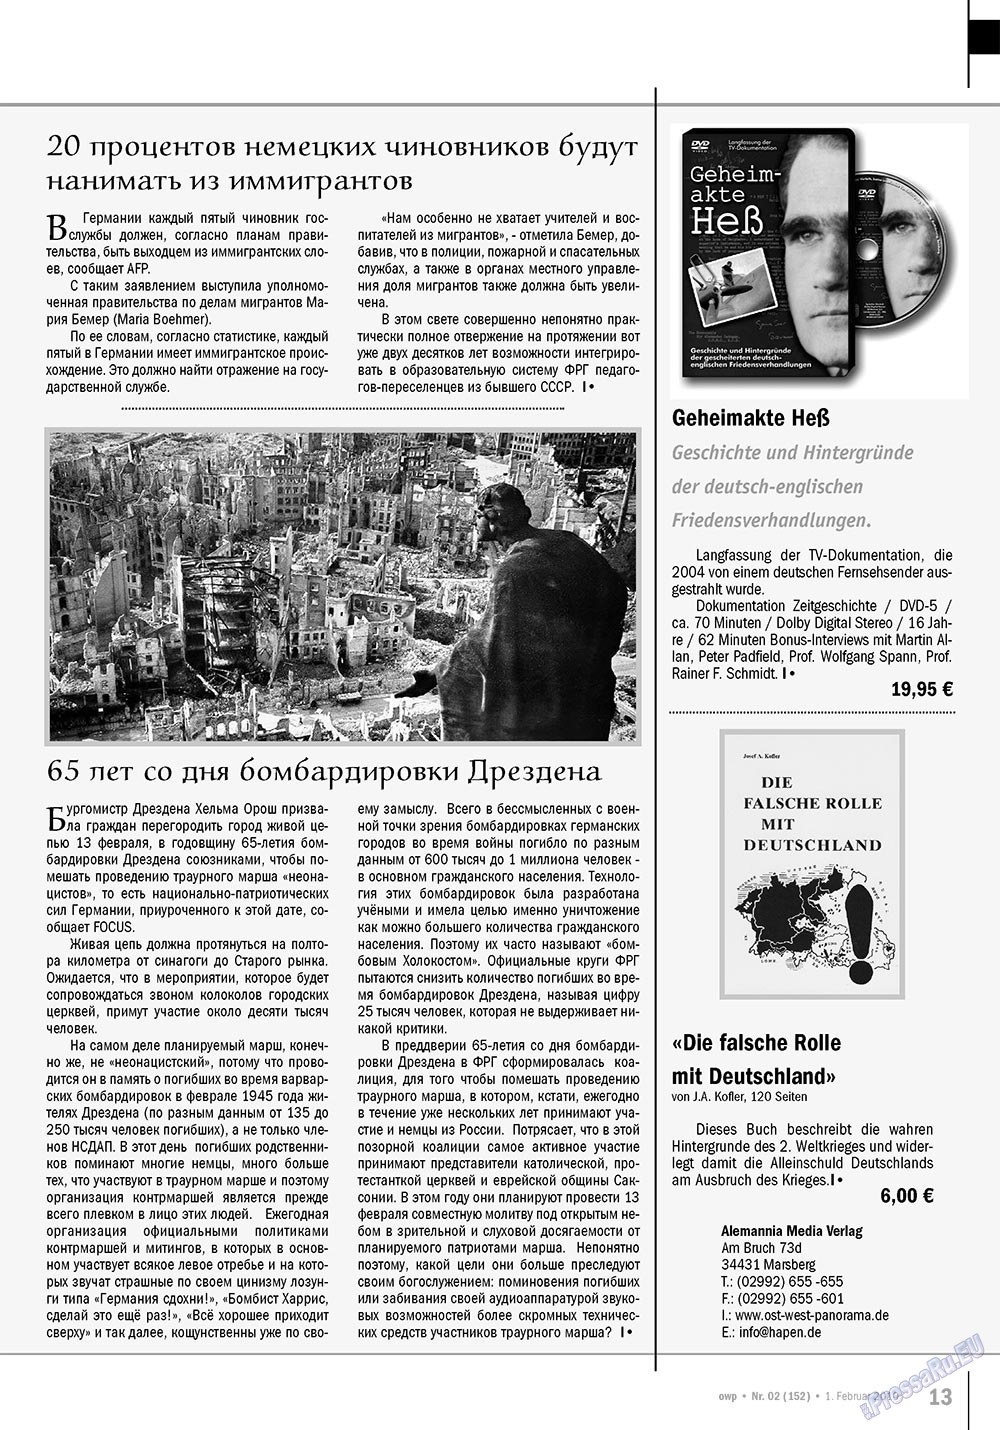 Ost-West Panorama (журнал). 2010 год, номер 2, стр. 13